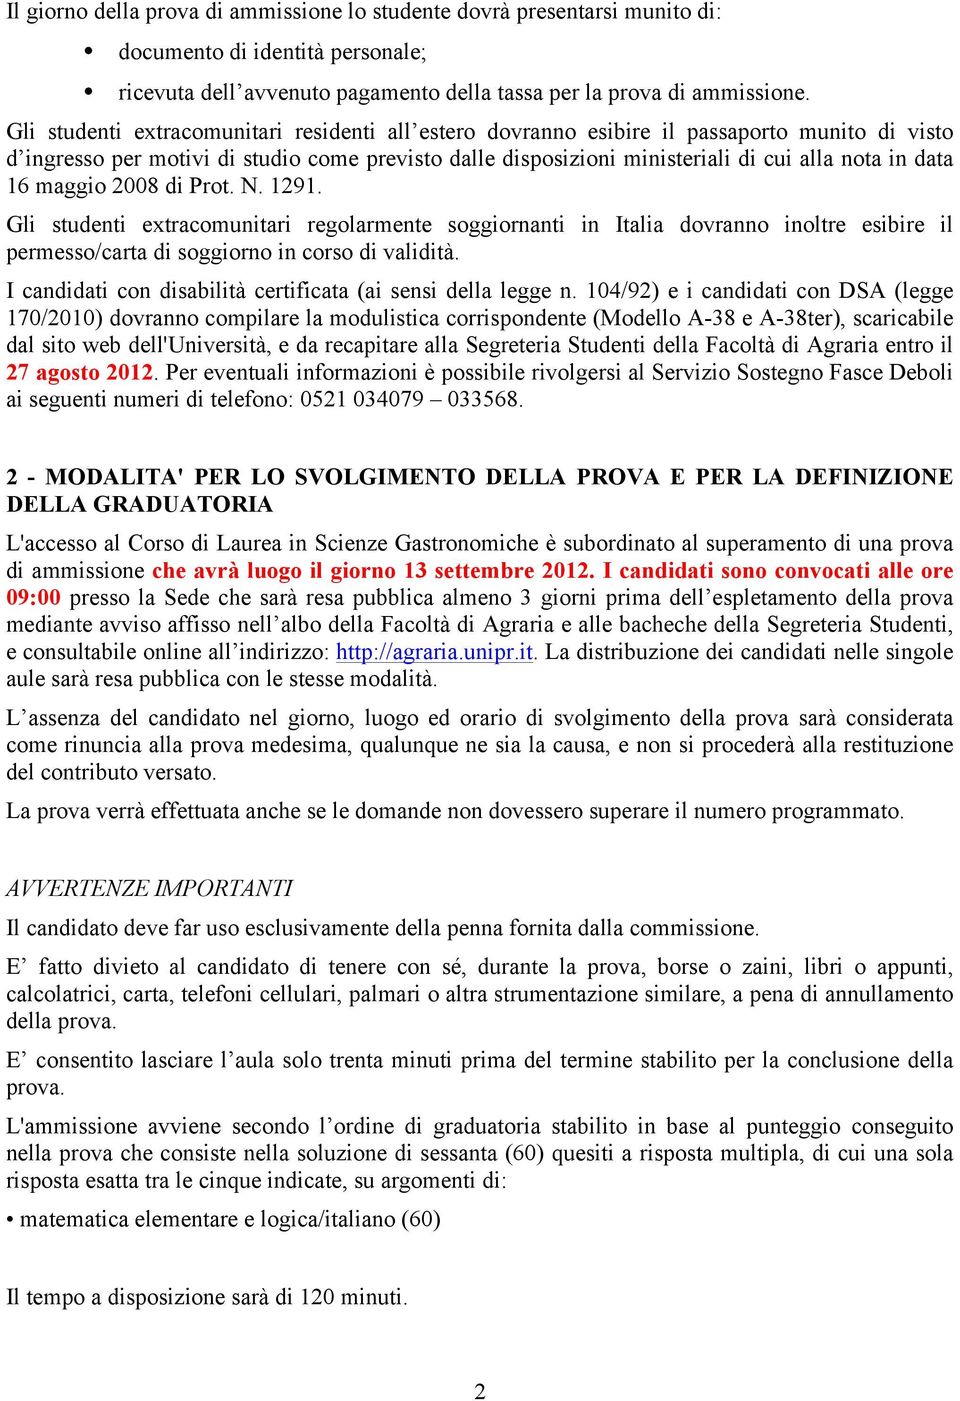 16 maggio 2008 di Prot. N. 1291. Gli studenti extracomunitari regolarmente soggiornanti in Italia dovranno inoltre esibire il permesso/carta di soggiorno in corso di validità.